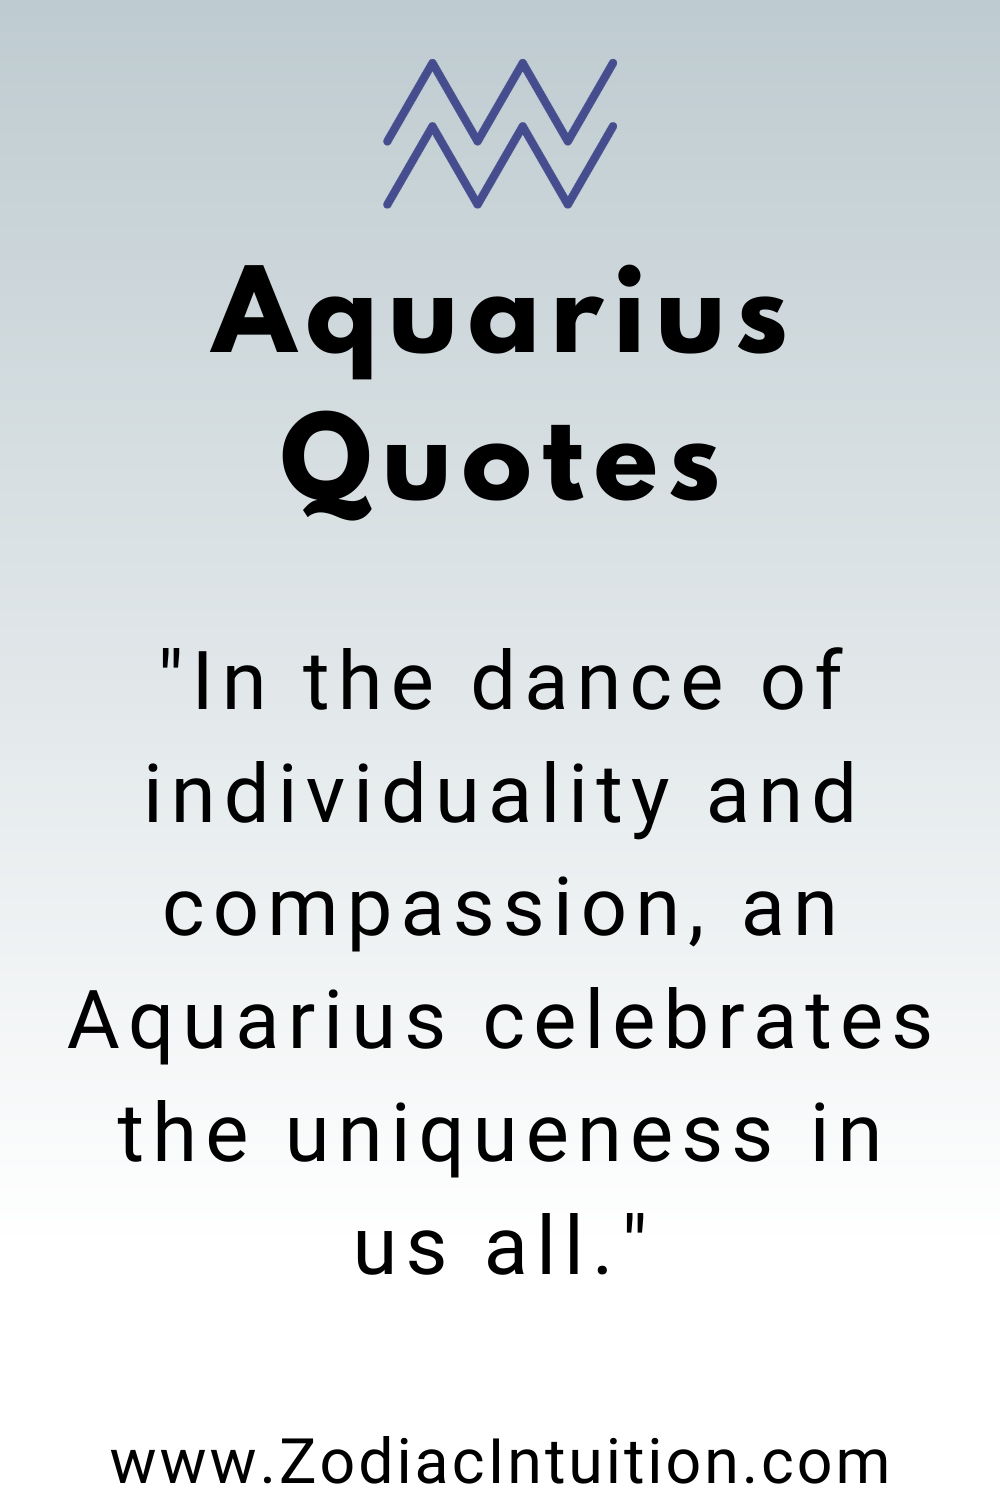 Top 5 Aquarius Quotes And Inspiration